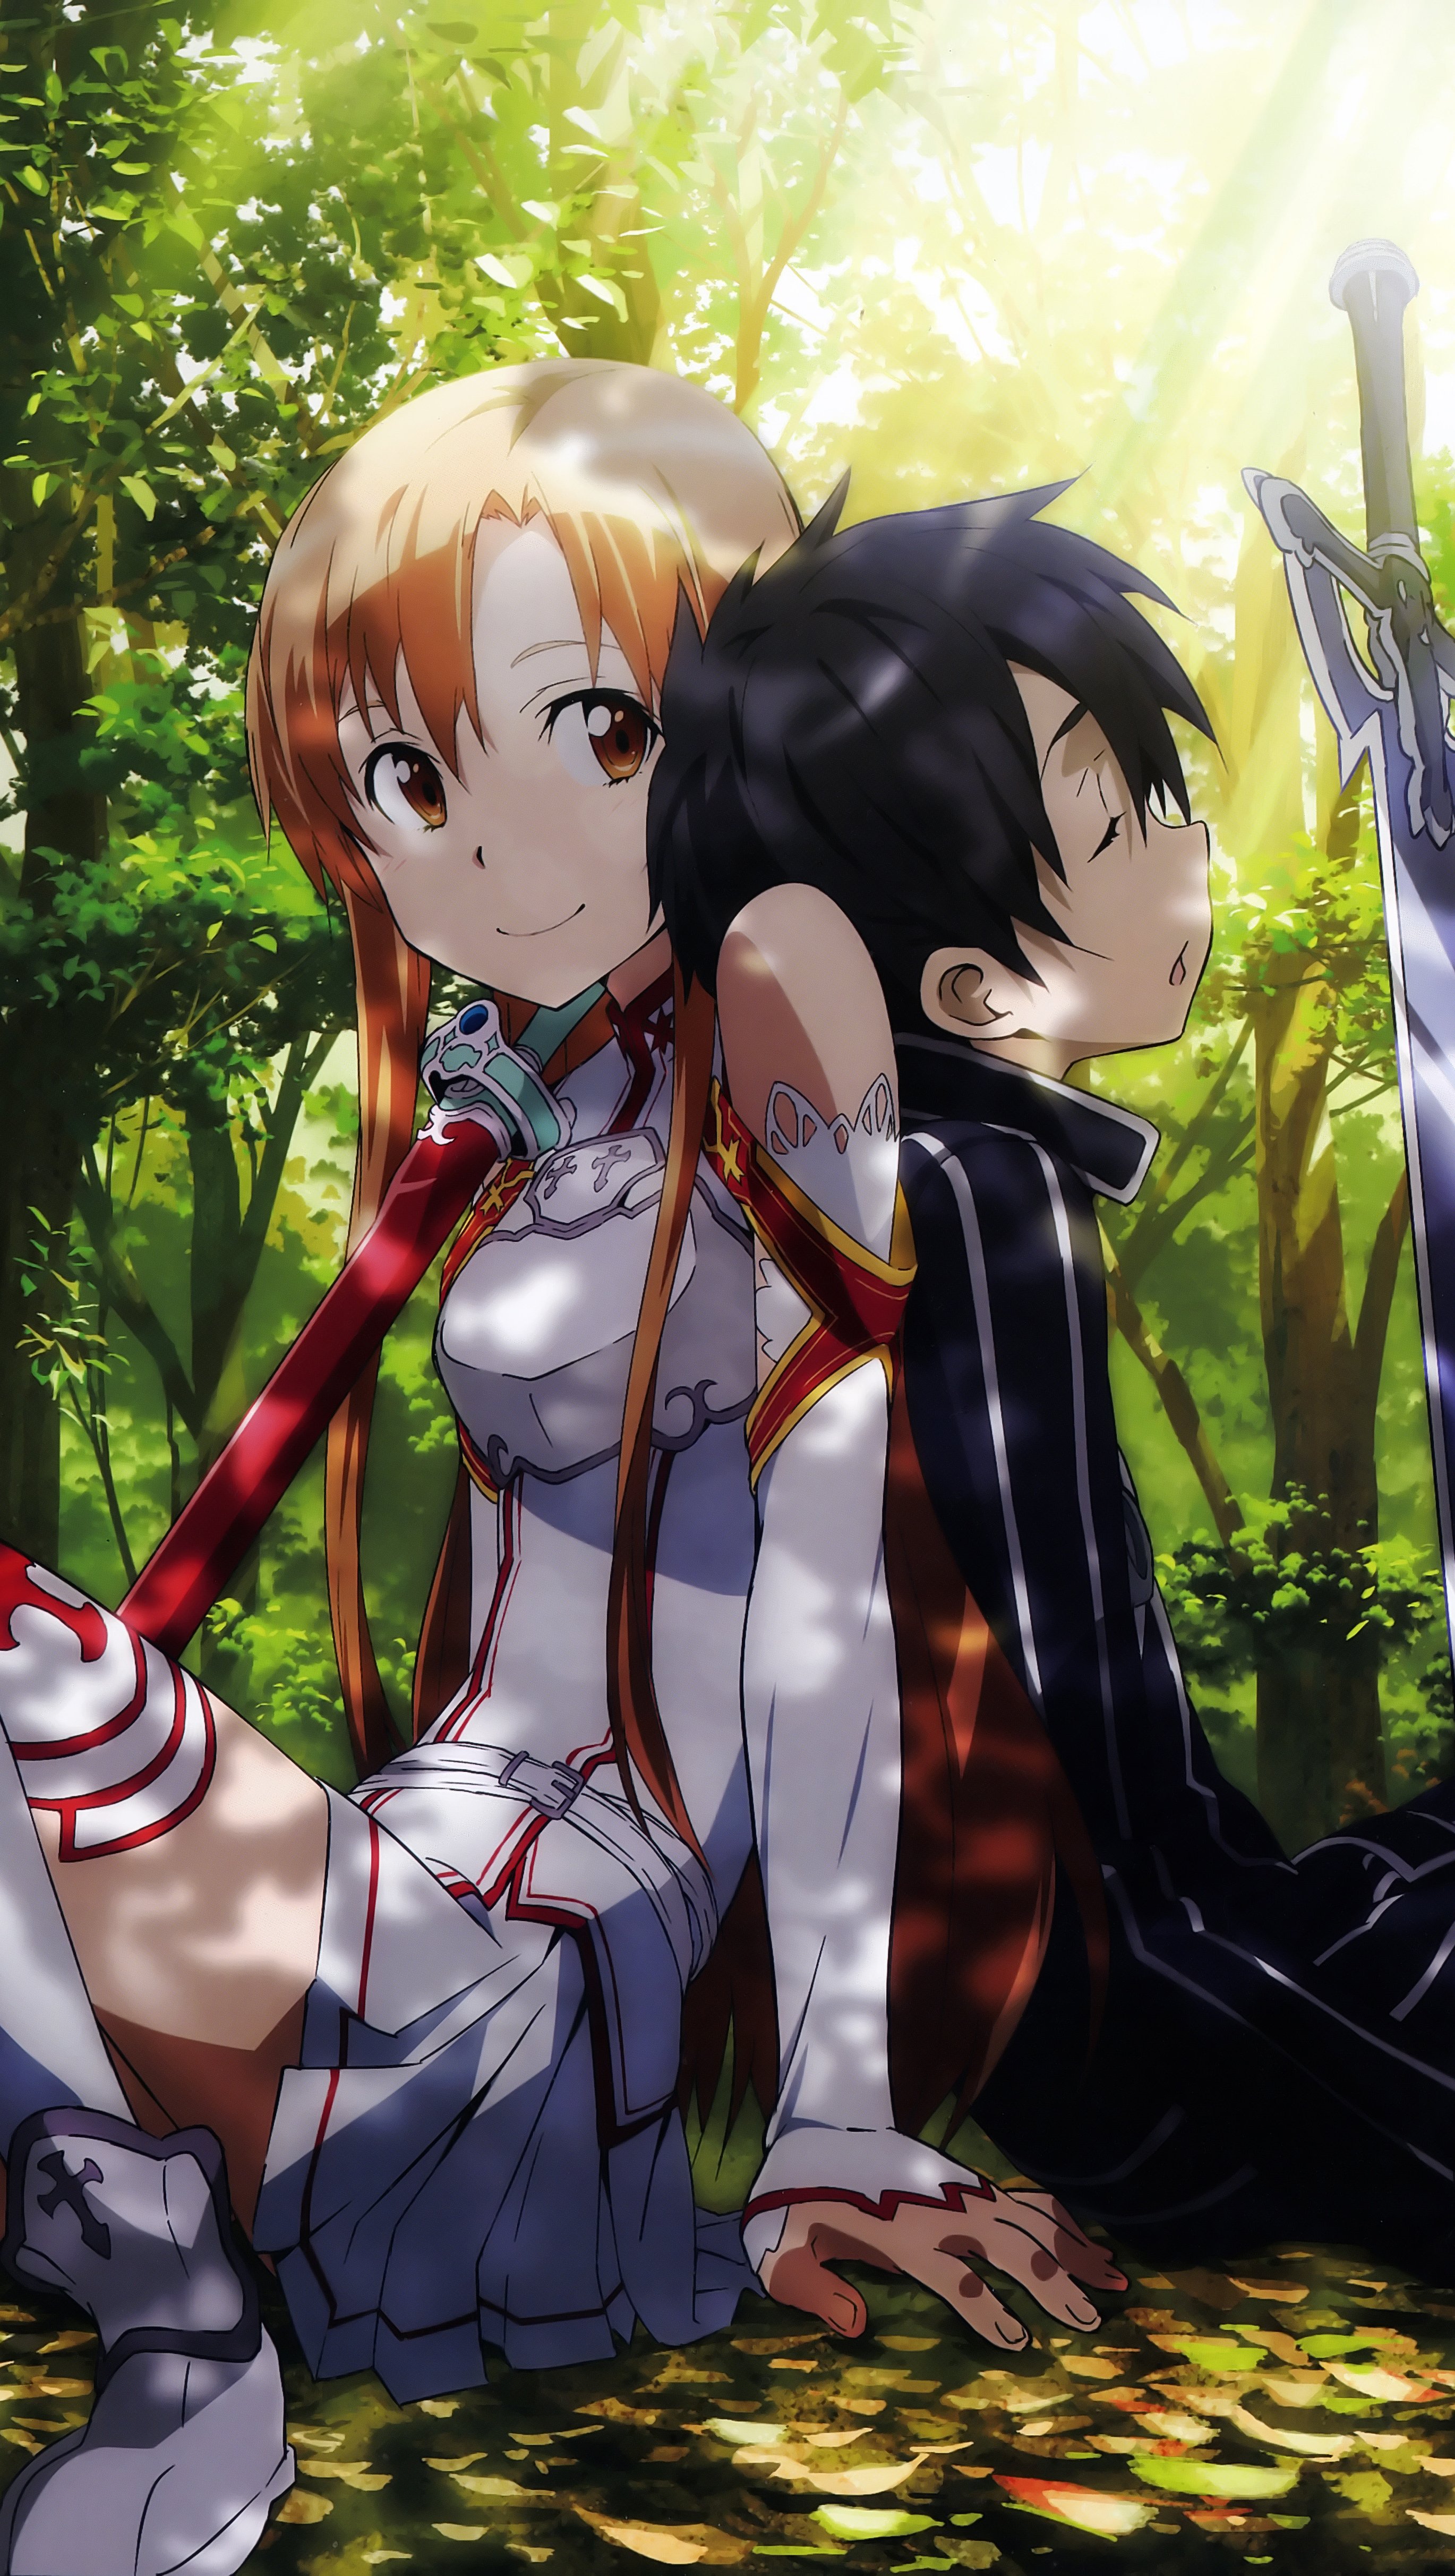 Fondos de pantalla Anime Kirito and Asuna Vertical